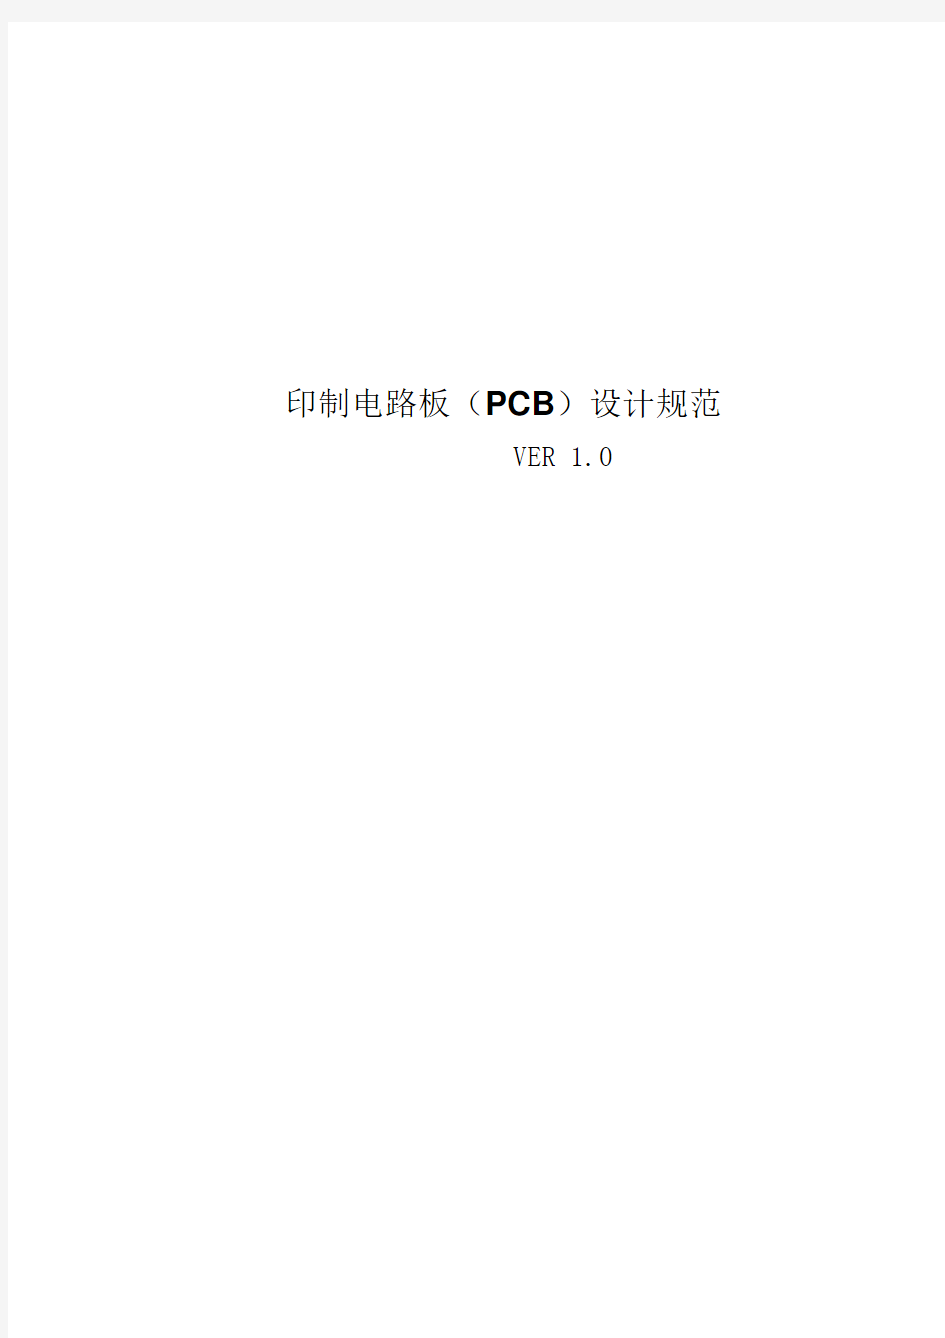 PCB设计规范